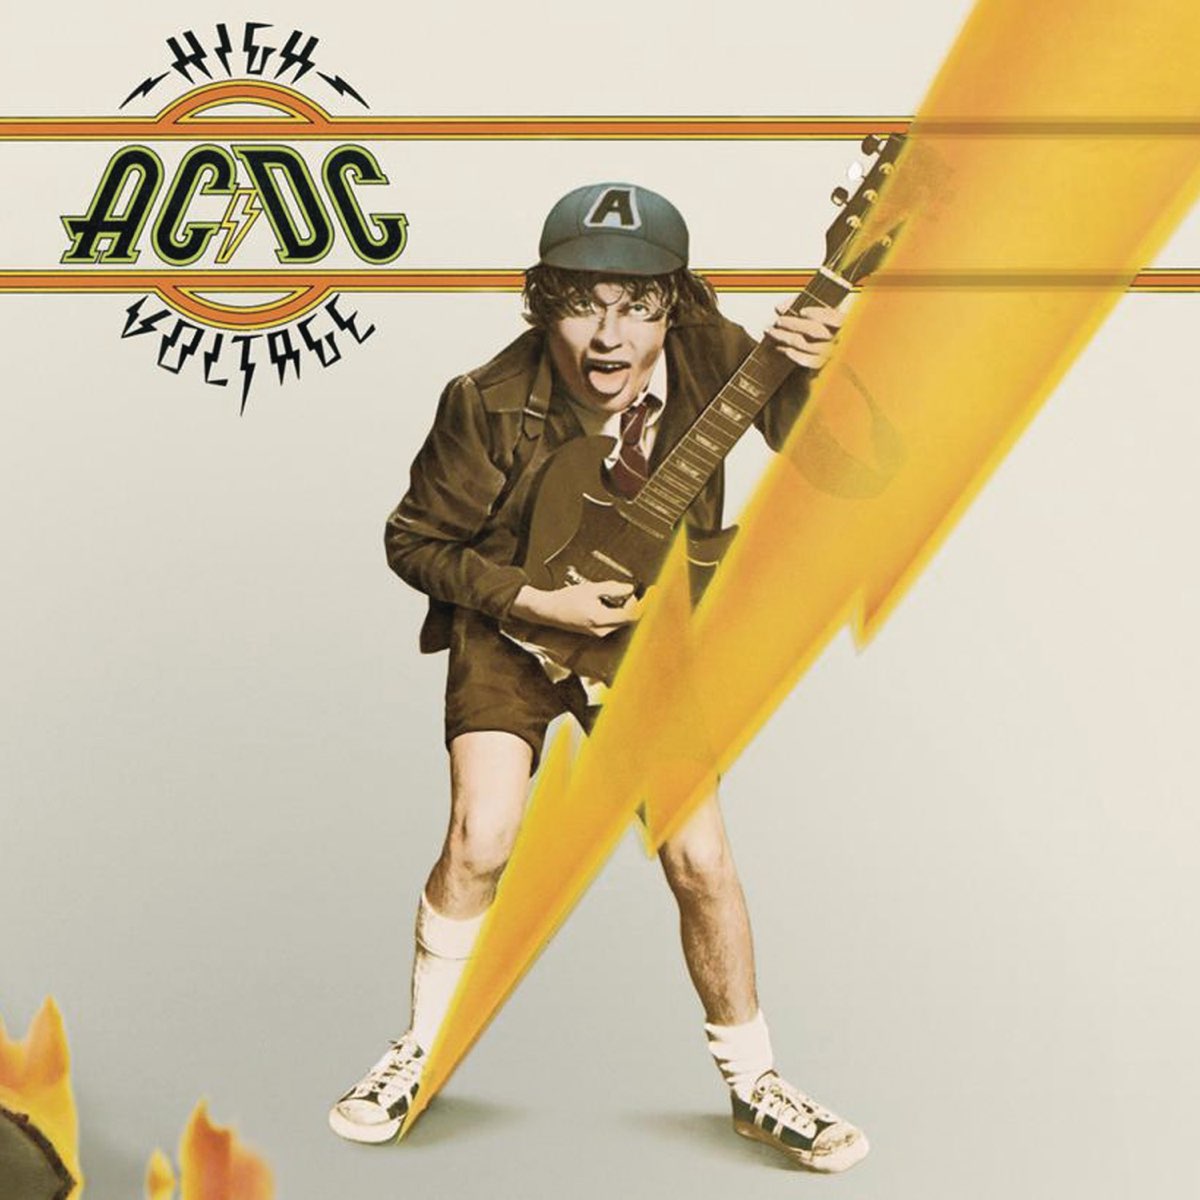 AC/DC - Apple Music